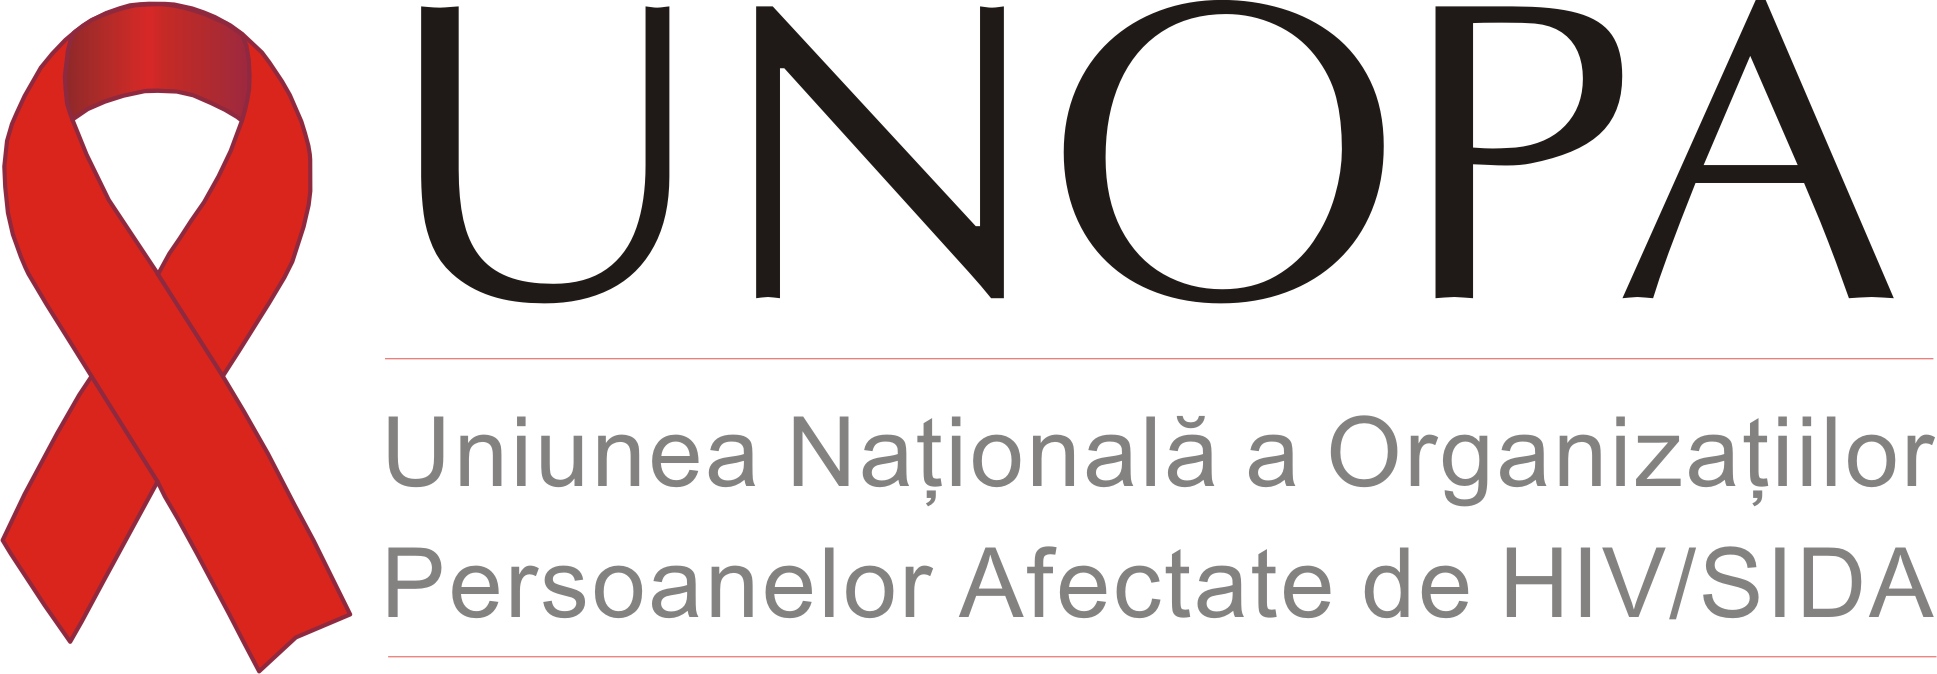 Uniunea Nationala a Organizatiilor Persoanelor Afectate de HIV/SIDA (UNOPA) logo